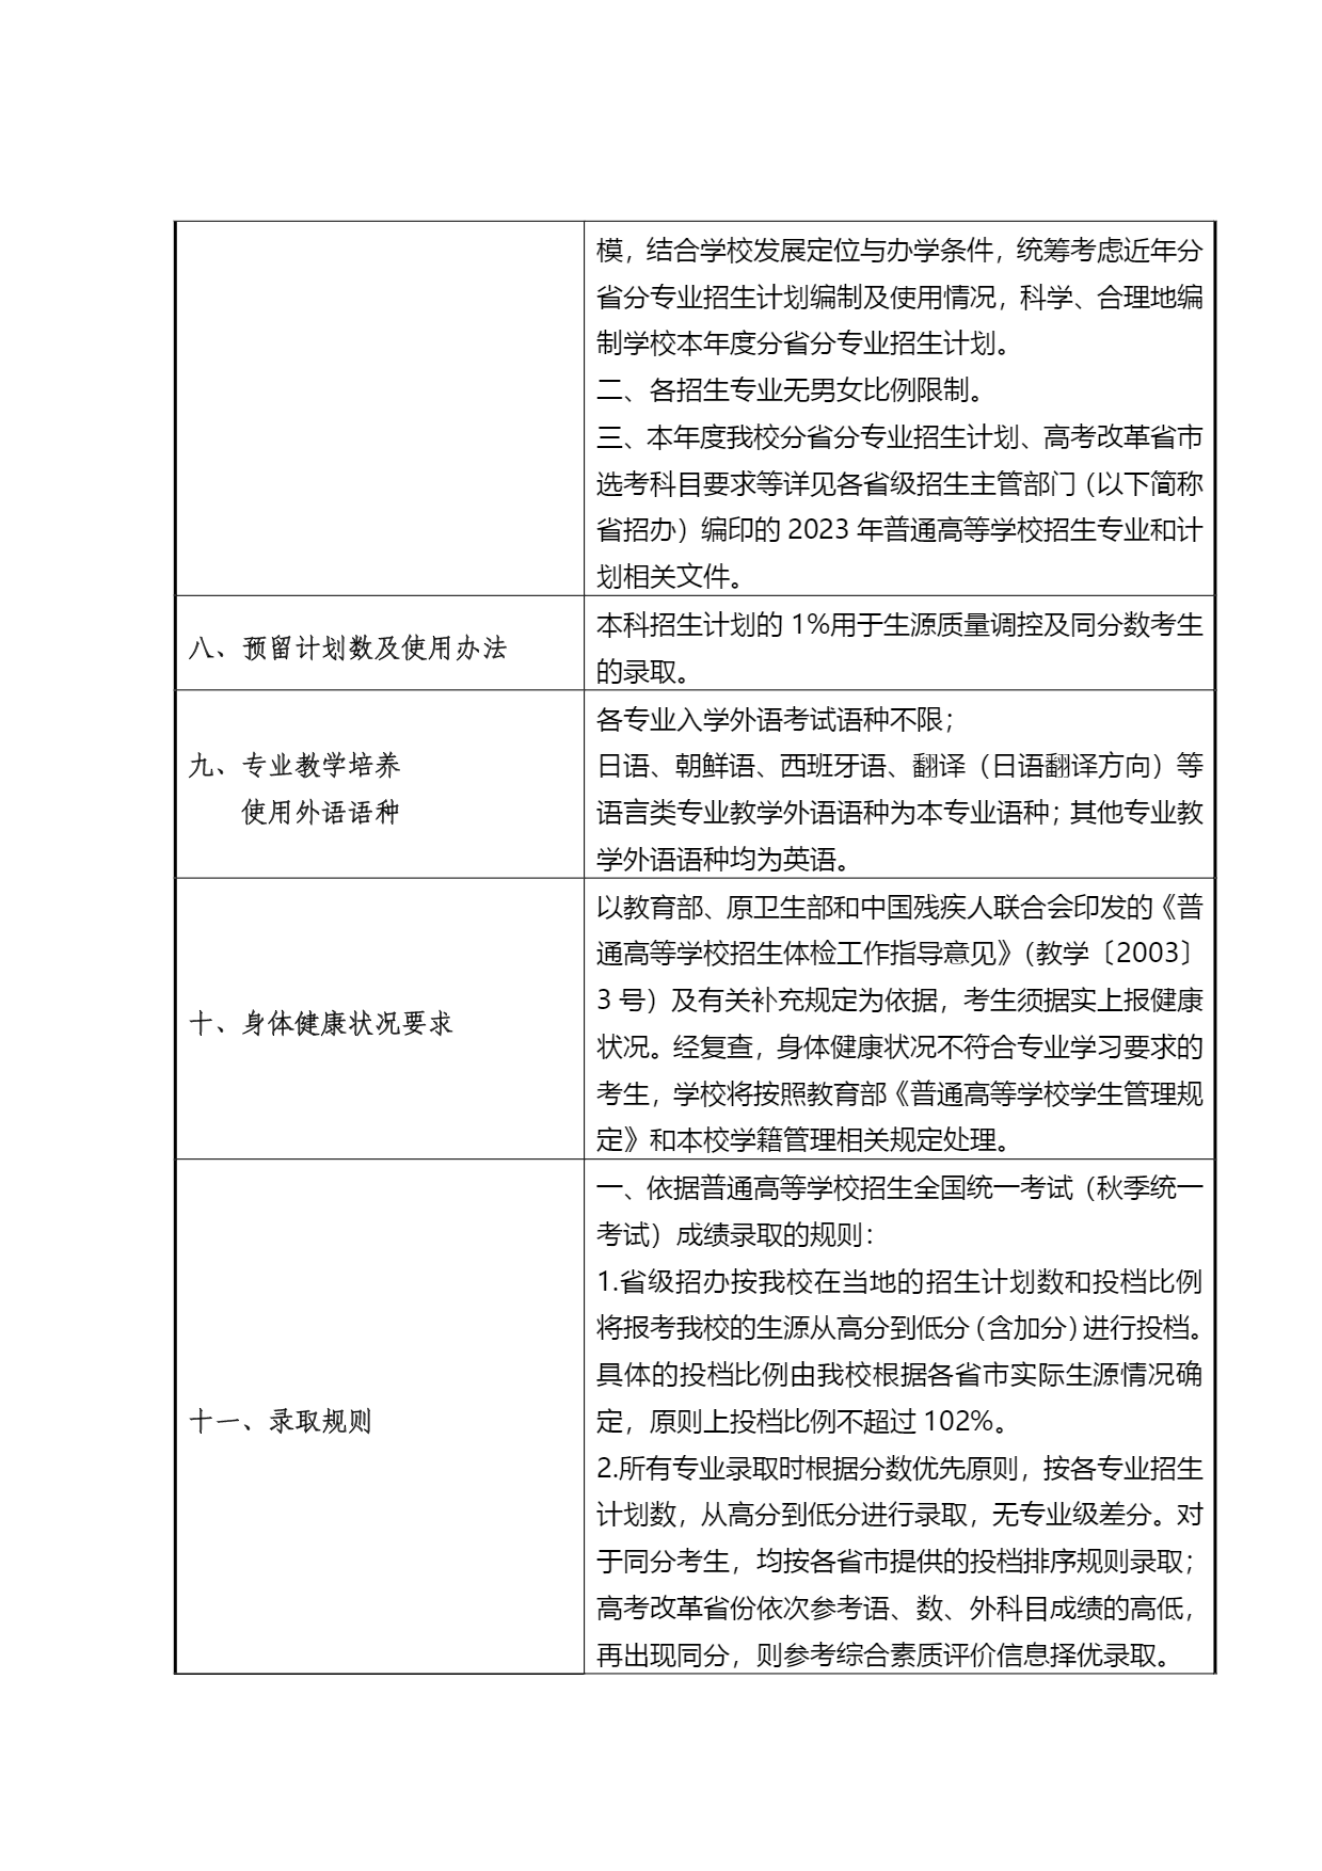 上海杉达学院－2023年秋季招生章程